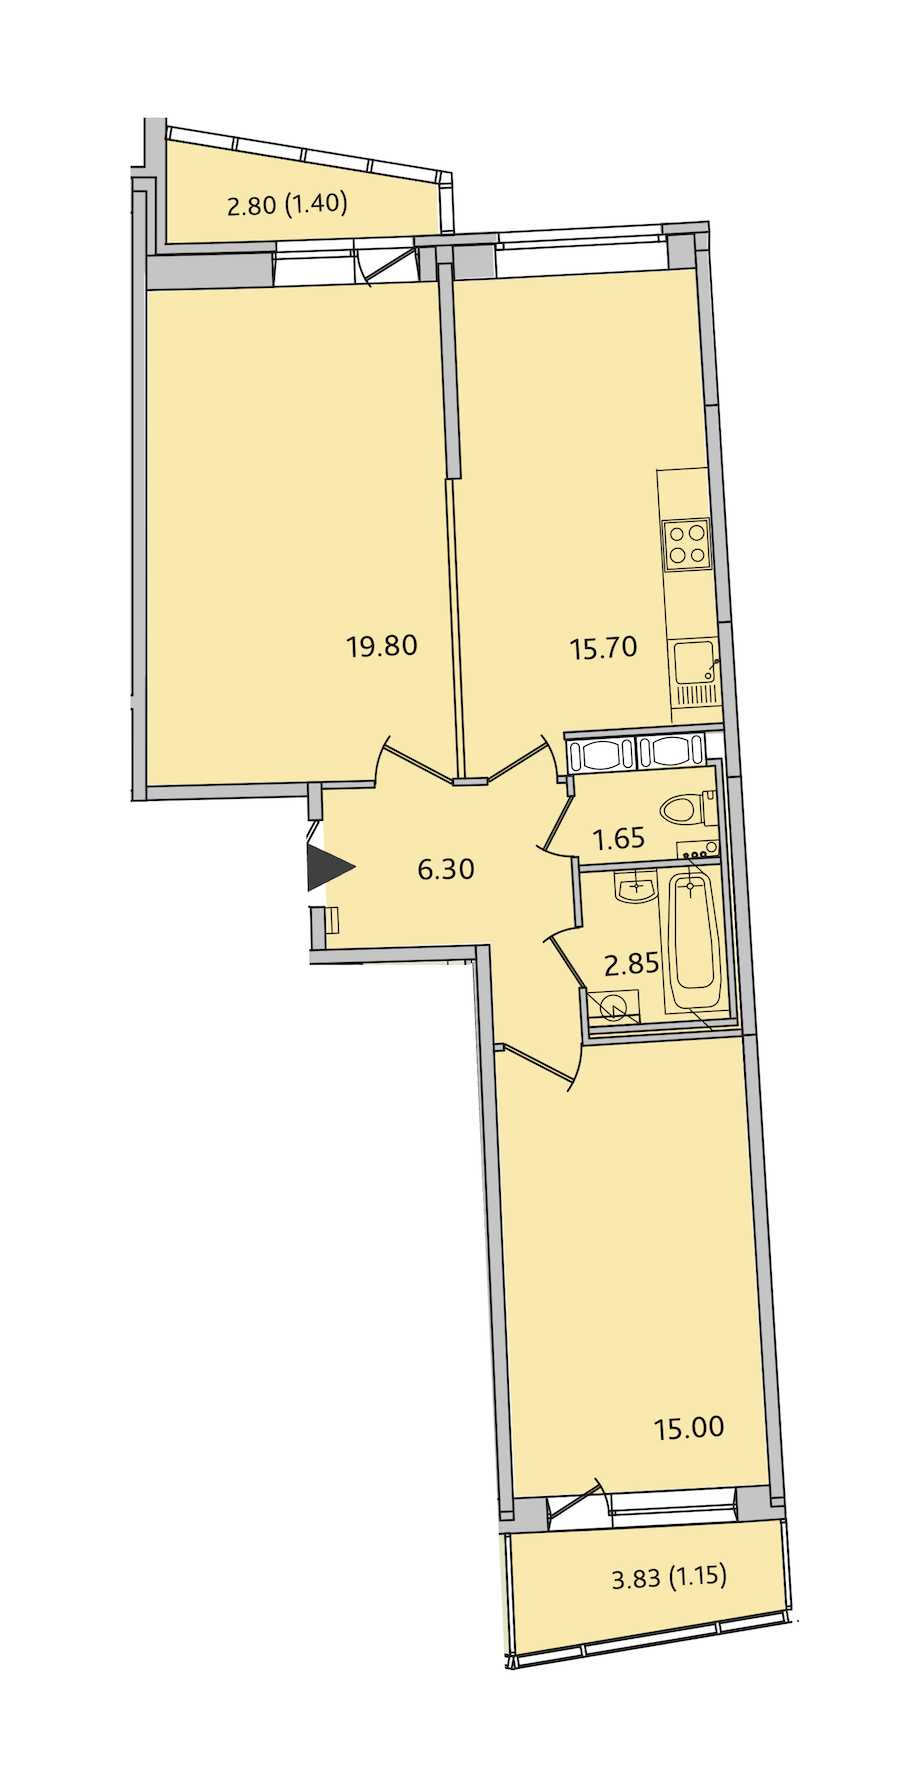 Двухкомнатная квартира в СПб Реновация: площадь 63.85 м2 , этаж: 10 – купить в Санкт-Петербурге